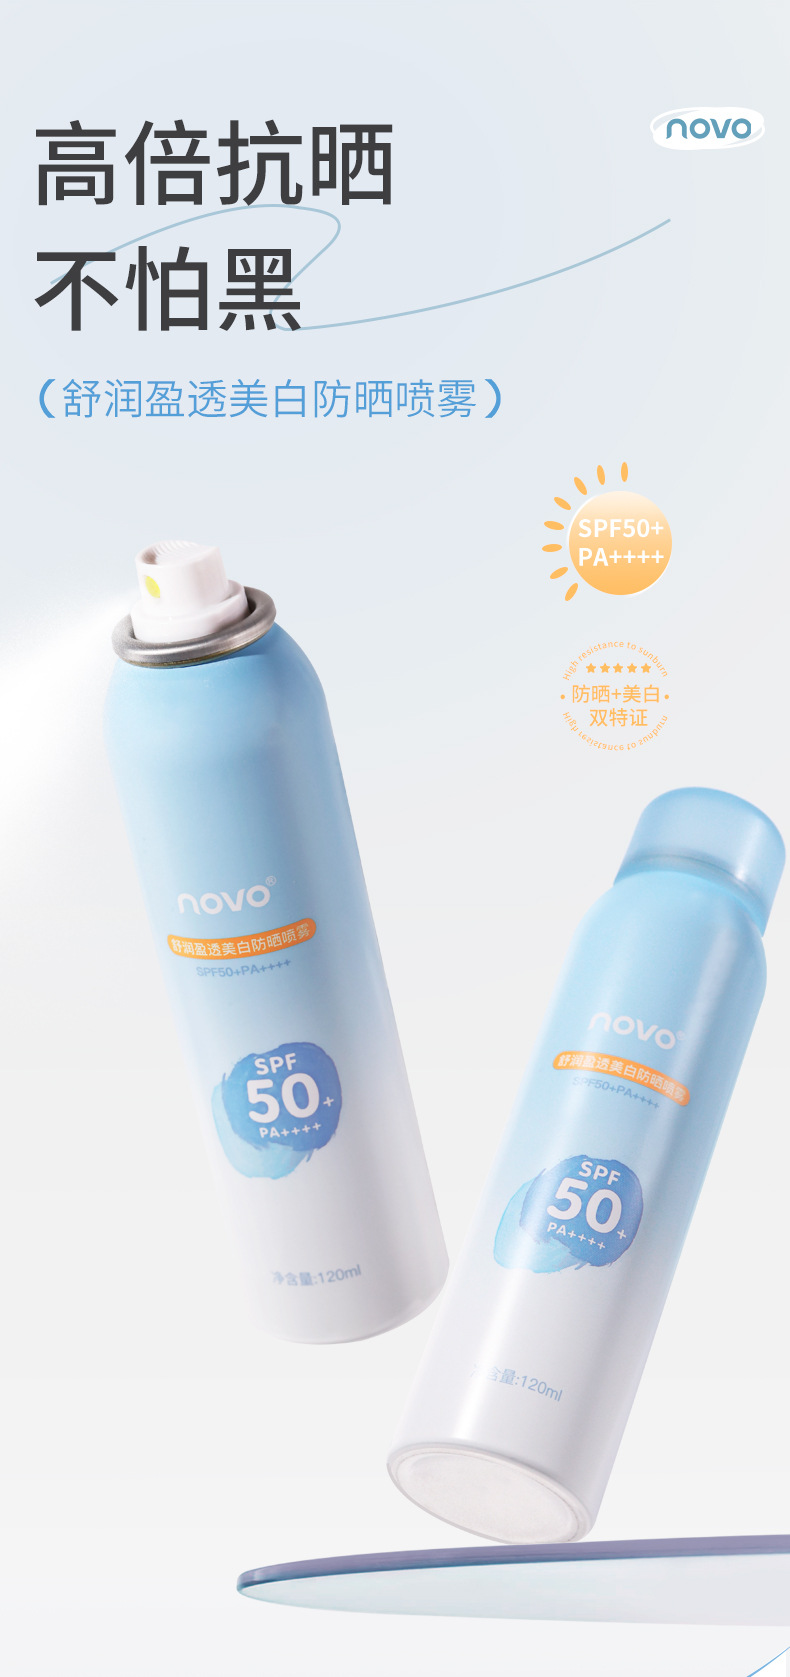 Sunscreen spray supplier